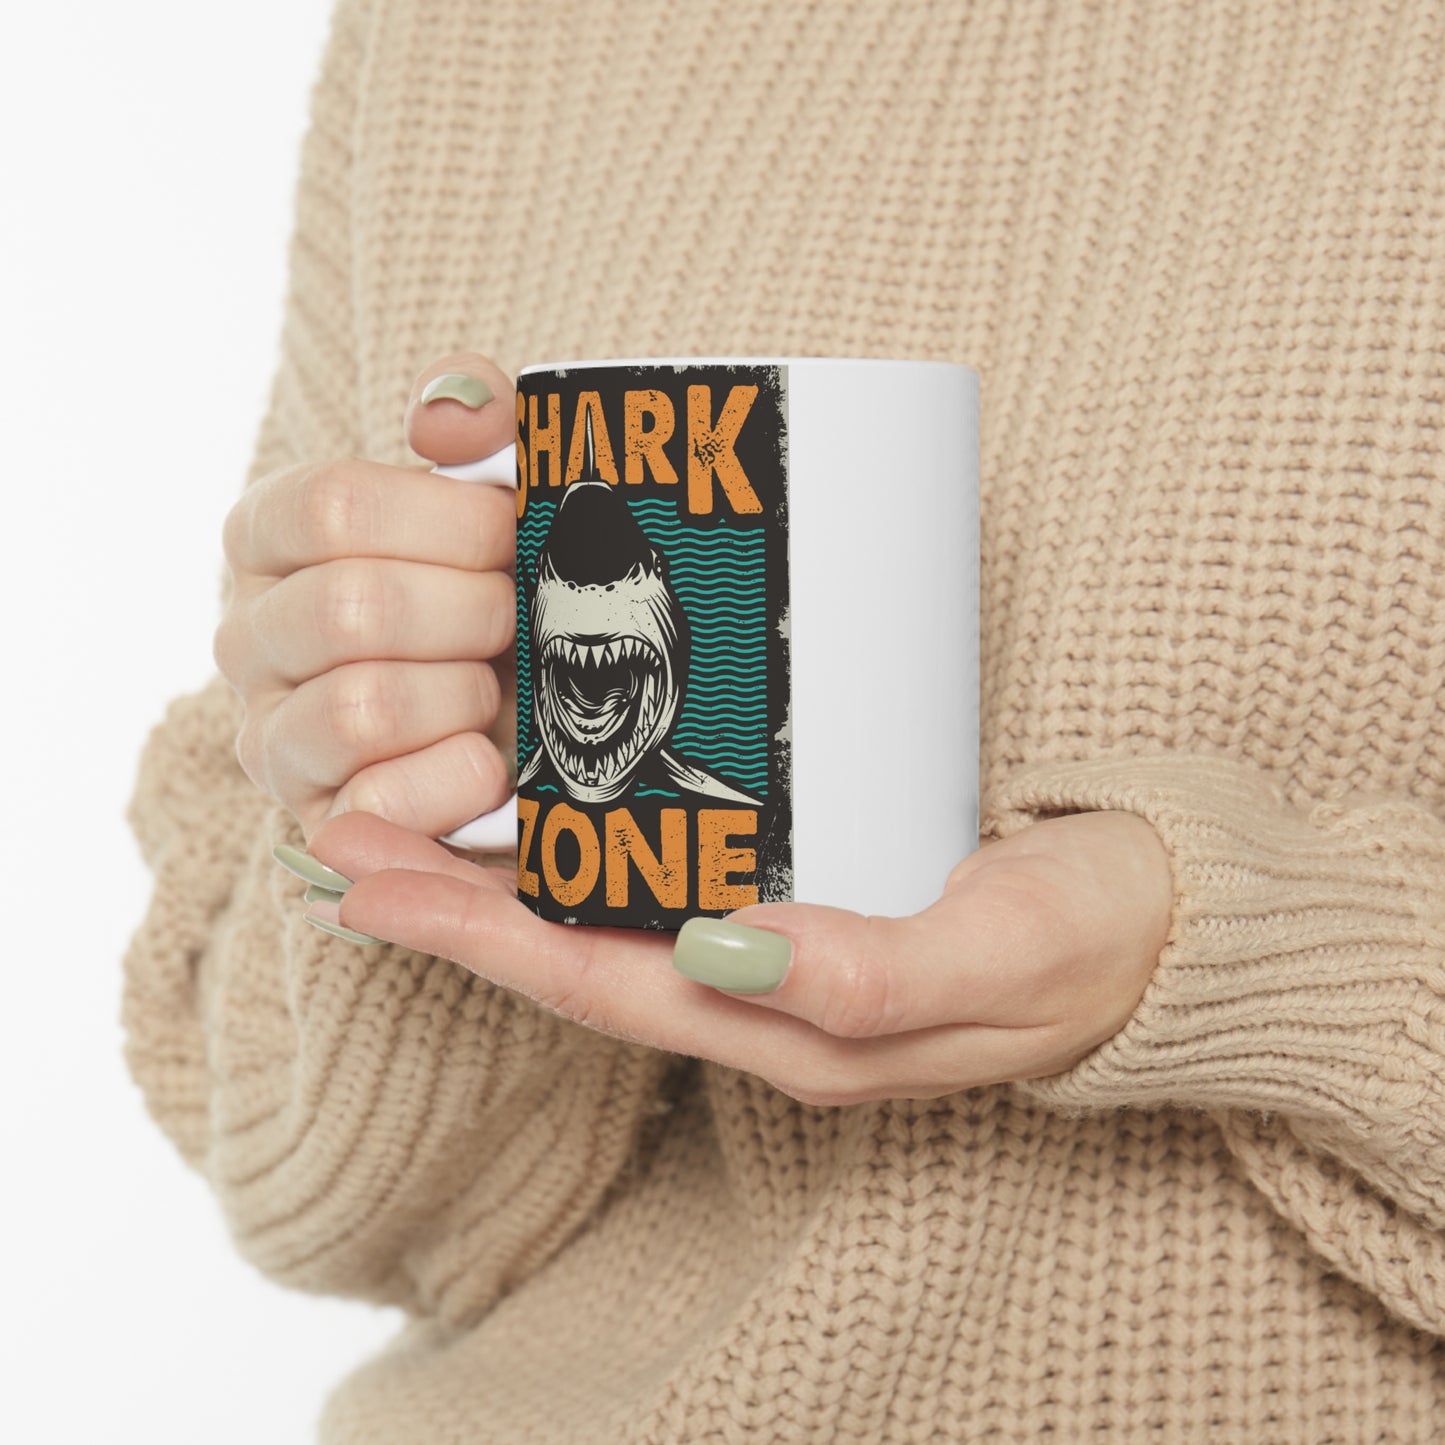 Shark zone - Ceramic Mug 11oz